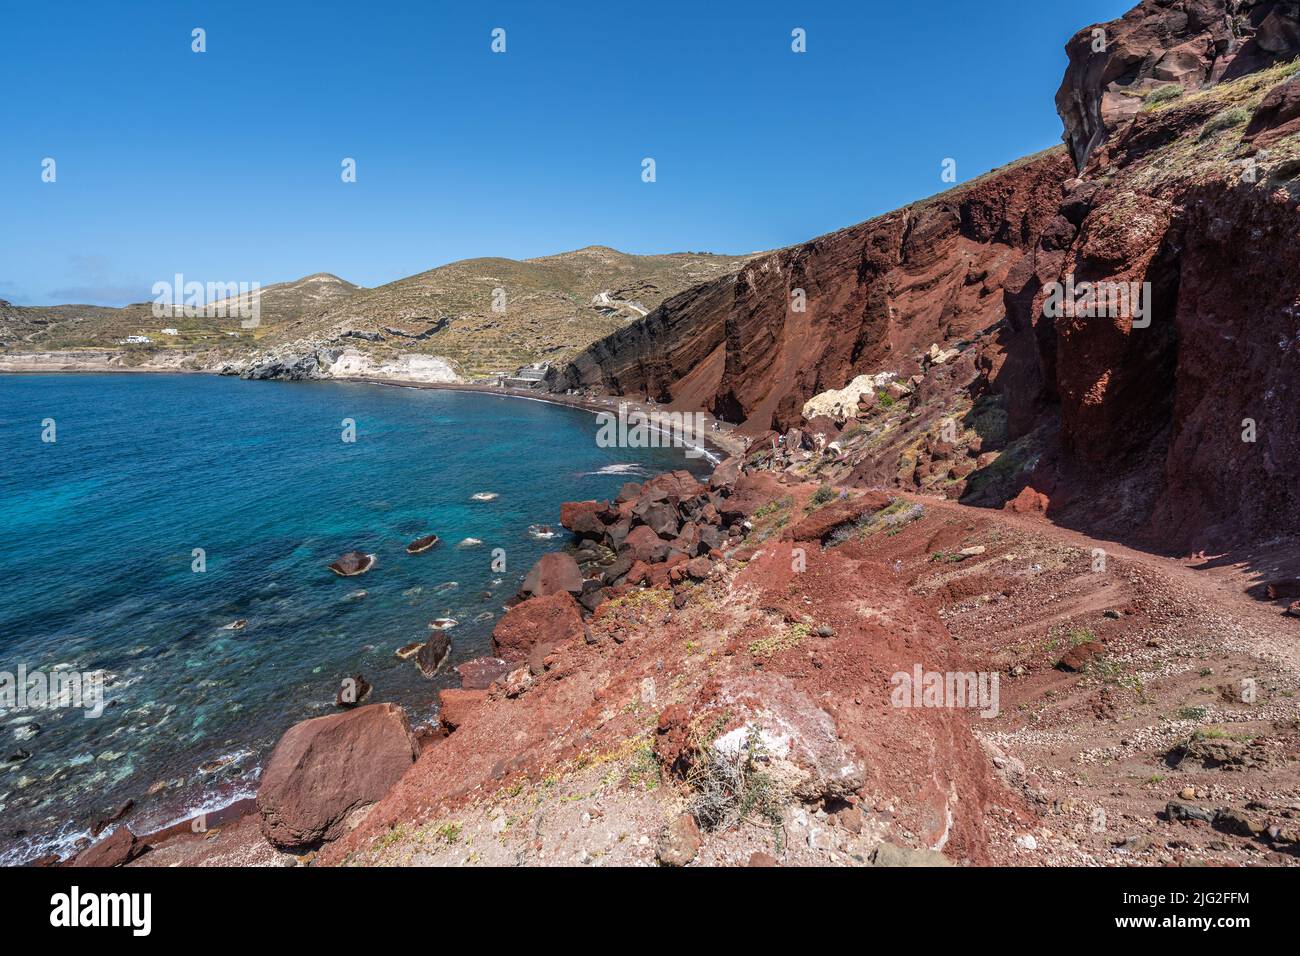 La spiaggia rossa di Santorini, una delle spiagge più famose dell'isola per le sue rocce vulcaniche rosse, la Grecia Foto Stock